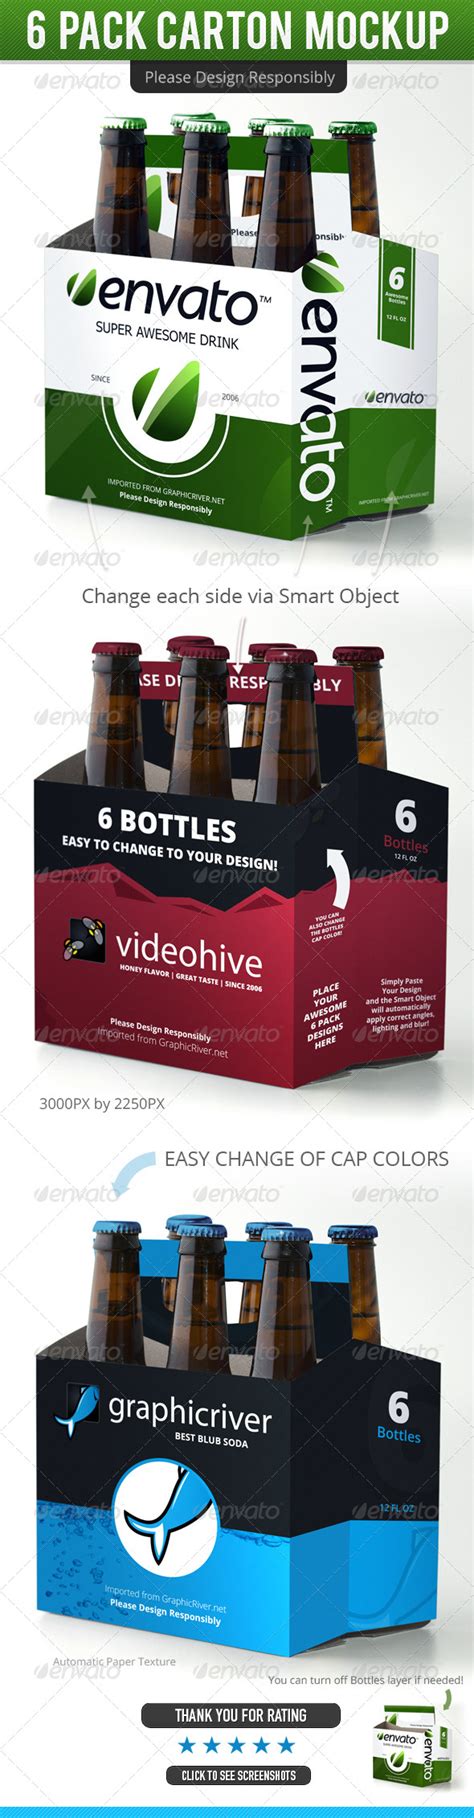 11 Egg Carton Psd Mock Up Images Free Beer Bottle Mock Up 6 Pack